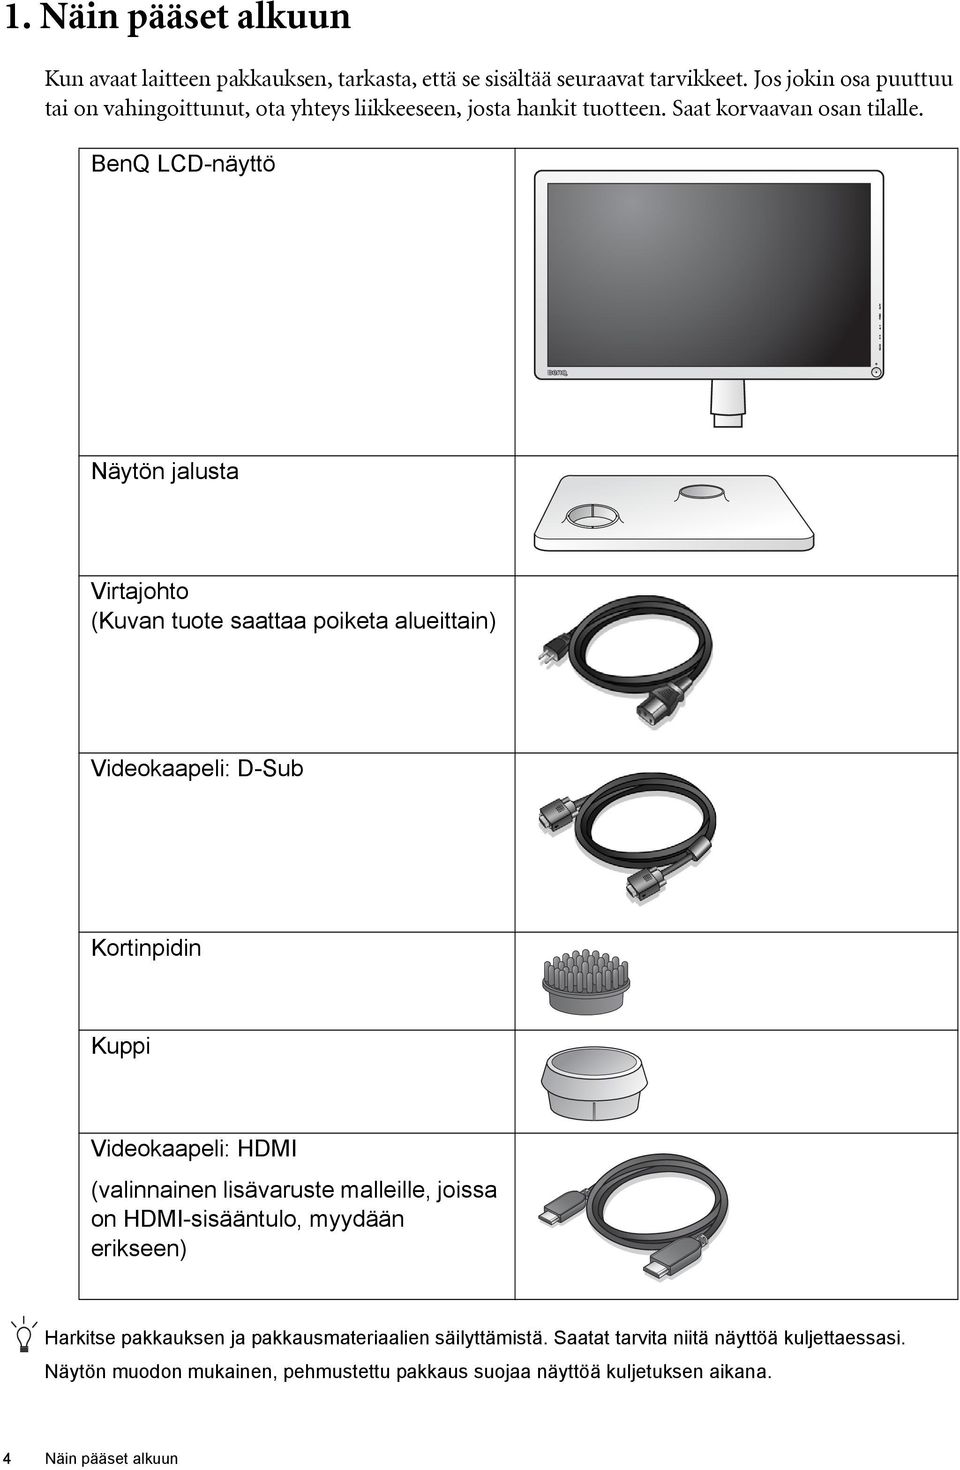 BenQ LCD-näyttö Näytön jalusta Virtajohto (Kuvan tuote saattaa poiketa alueittain) Videokaapeli: D-Sub Kortinpidin Kuppi Videokaapeli: HDMI (valinnainen